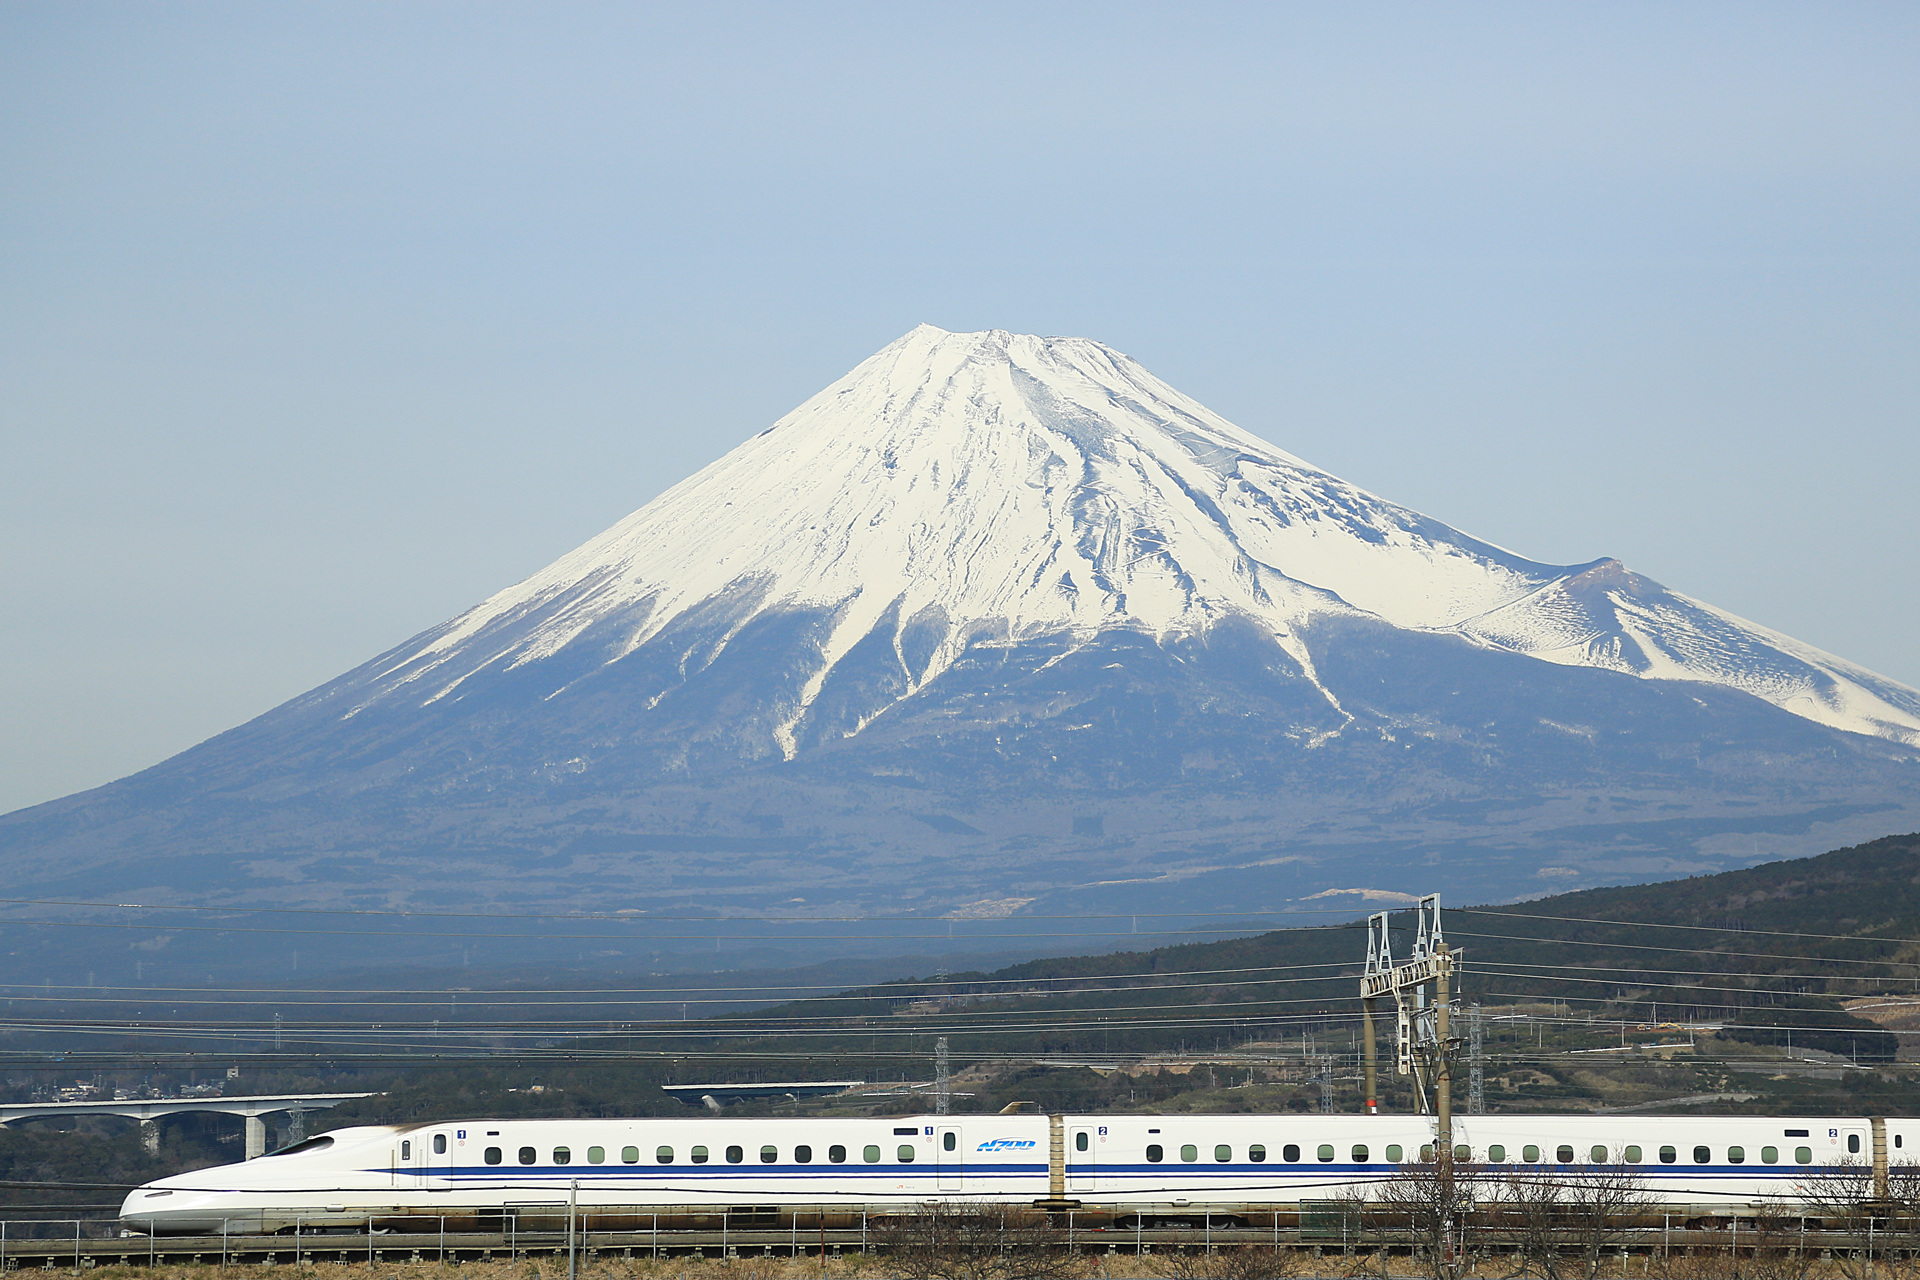 鉄道 新幹線 曇り時の富士山と新幹線 壁紙19x1280 壁紙館